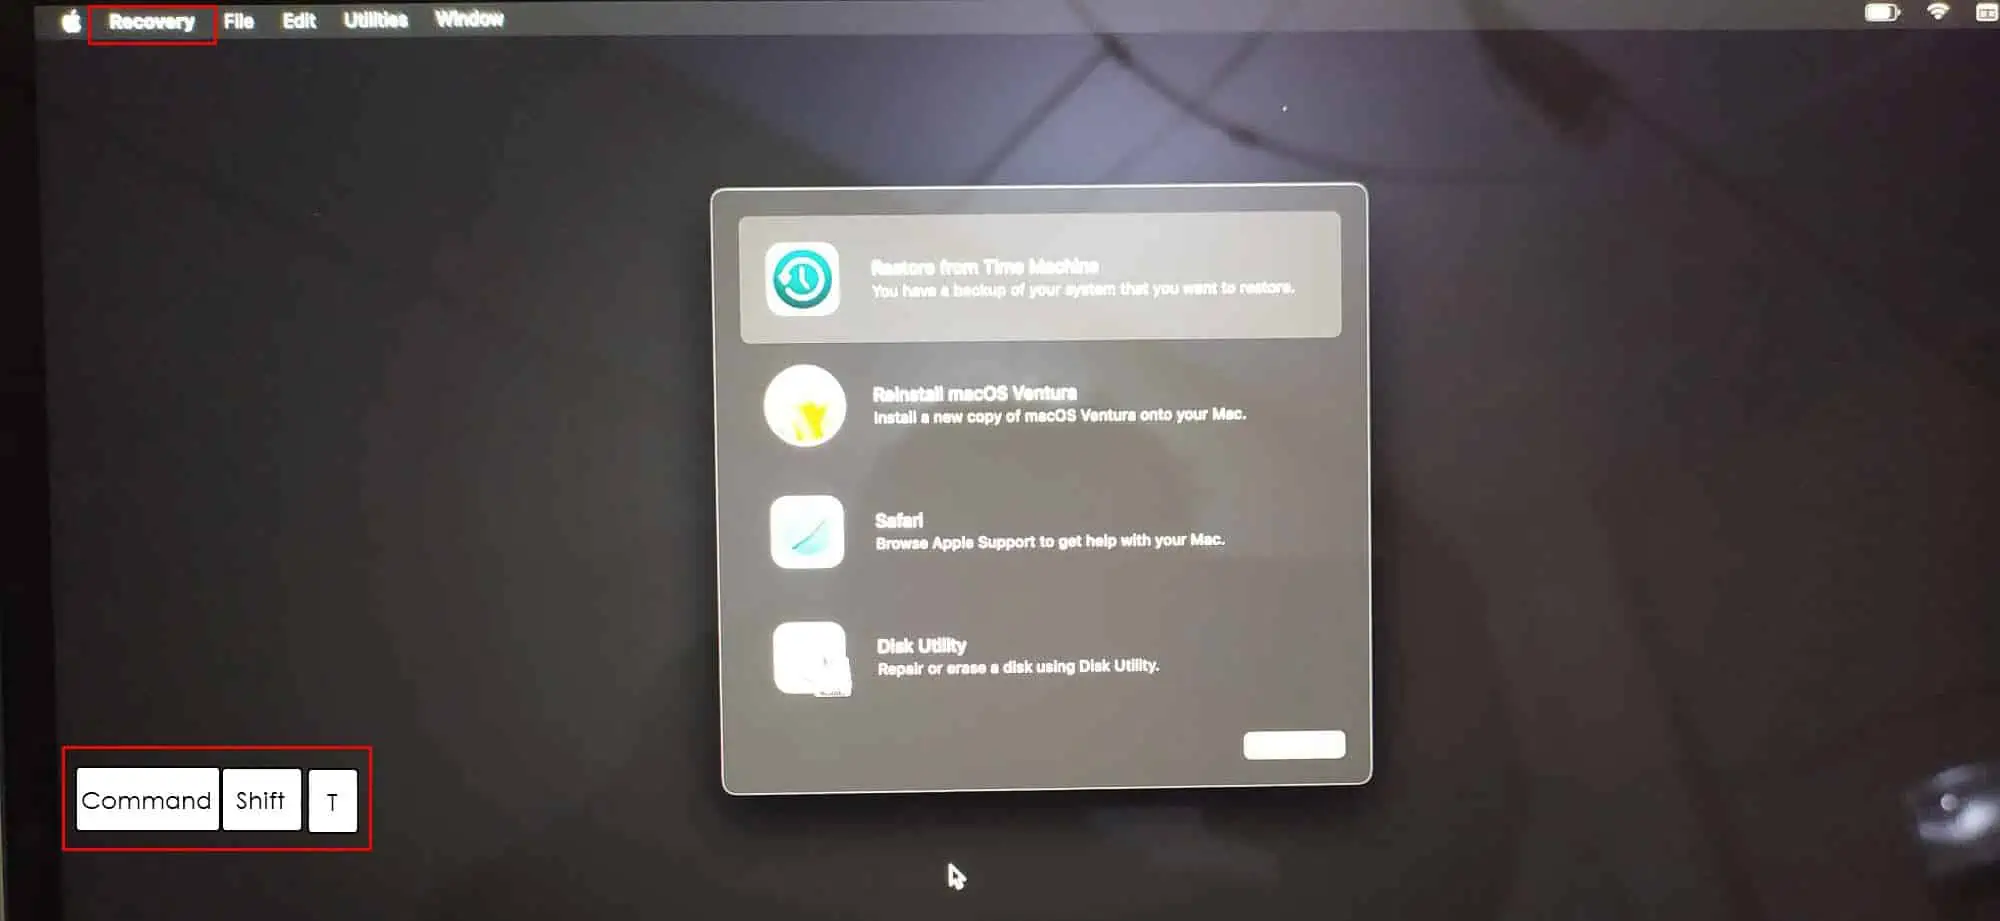 helyreállítási segédprogram képernyője a macbook pro-n